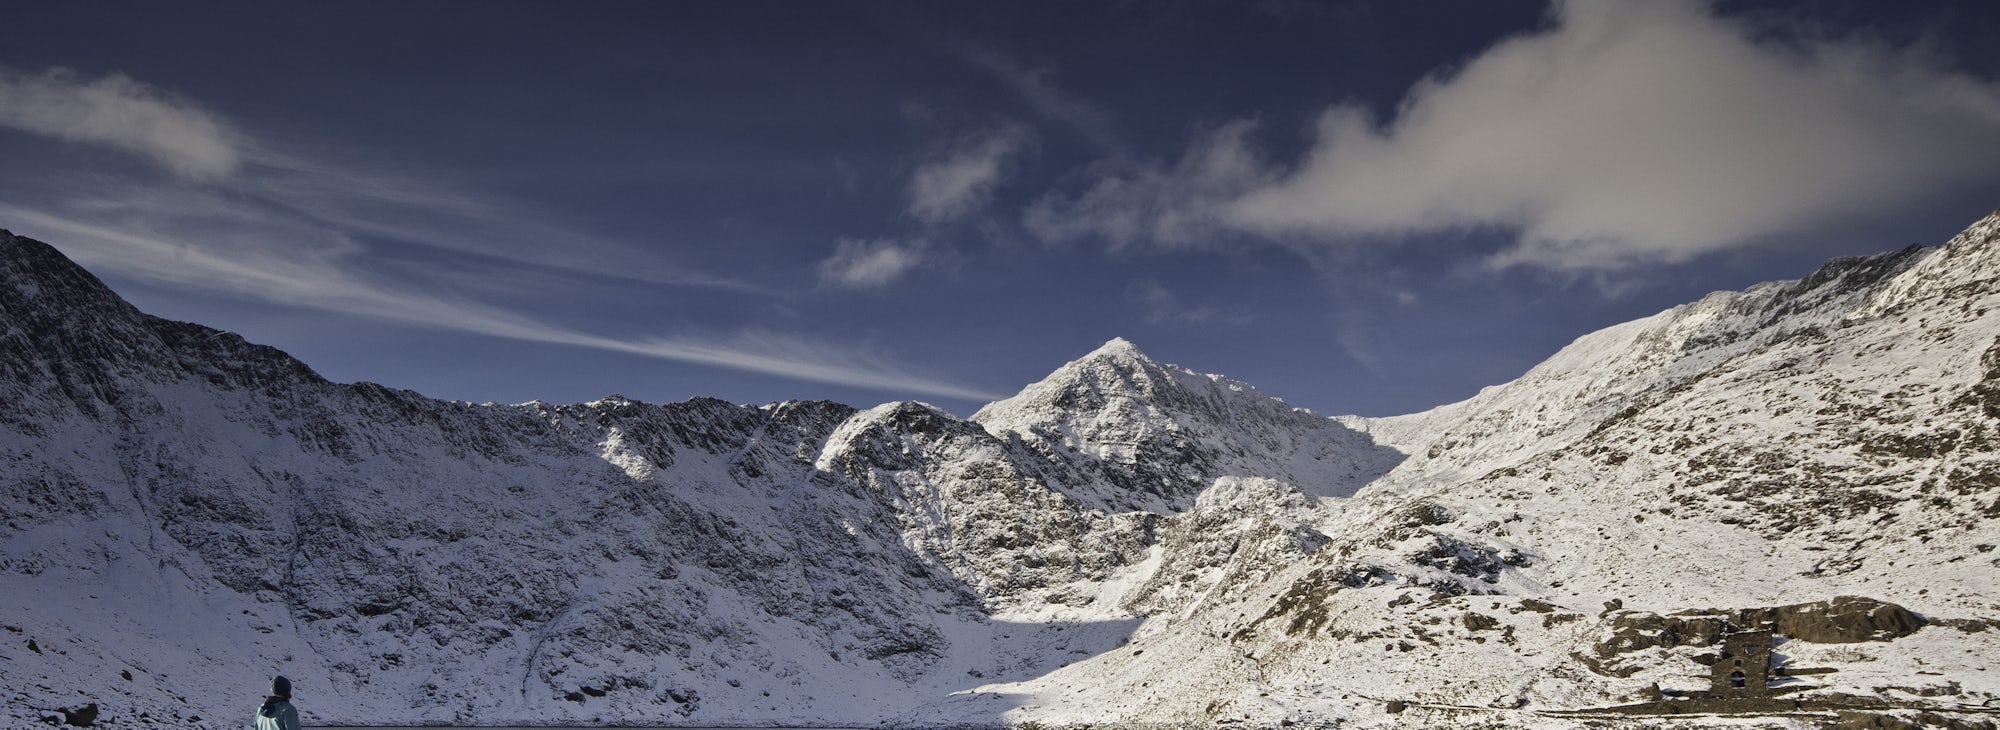 Mount Snowdon Peak